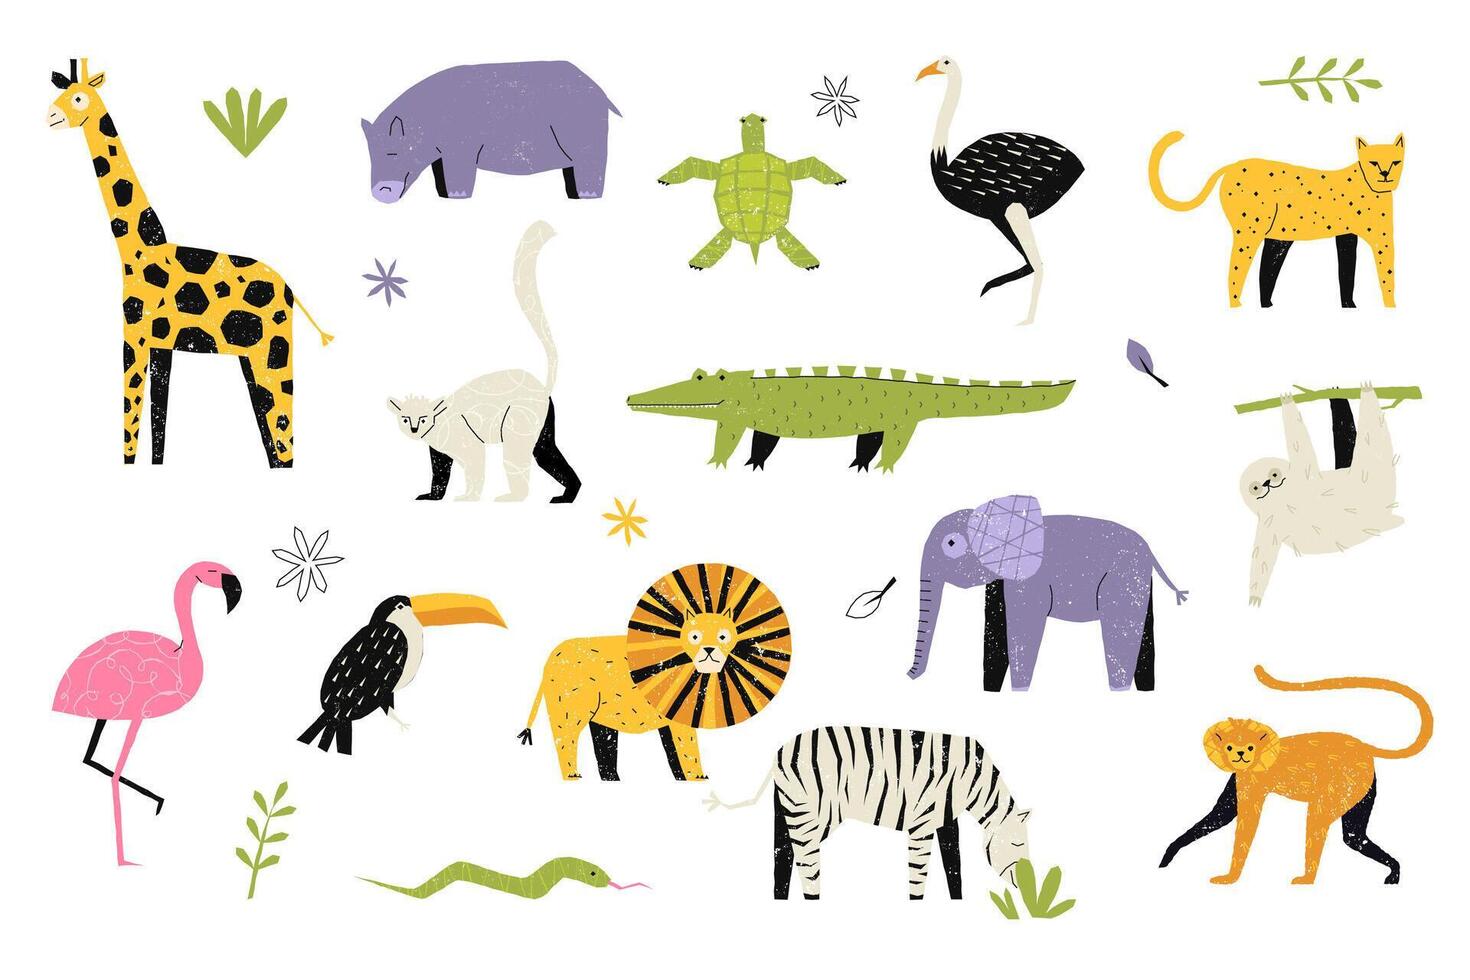 kinderachtig modieus dieren. abstract naief meetkundig vormen van kinderen, schattig grappig baby zebra nijlpaard leeuw giraffe tijger silhouet pictogrammen. geïsoleerd reeks vector